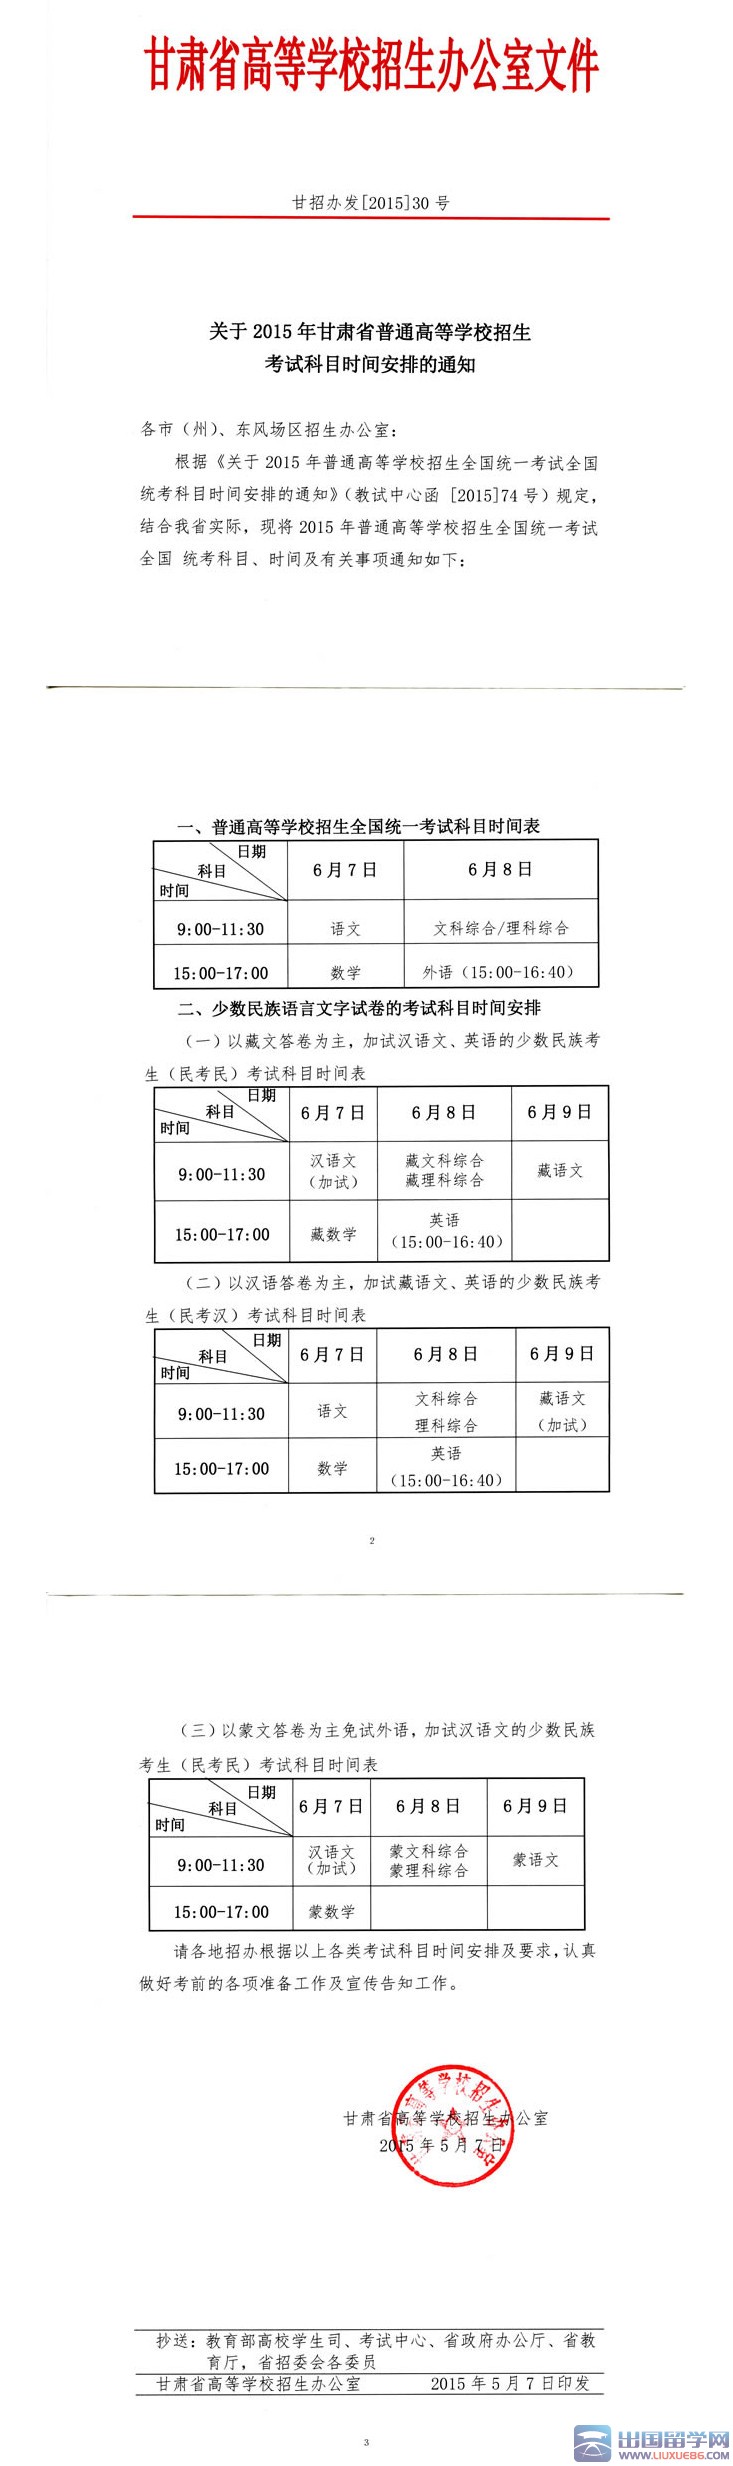 2015年甘肃高考科目及时间安排